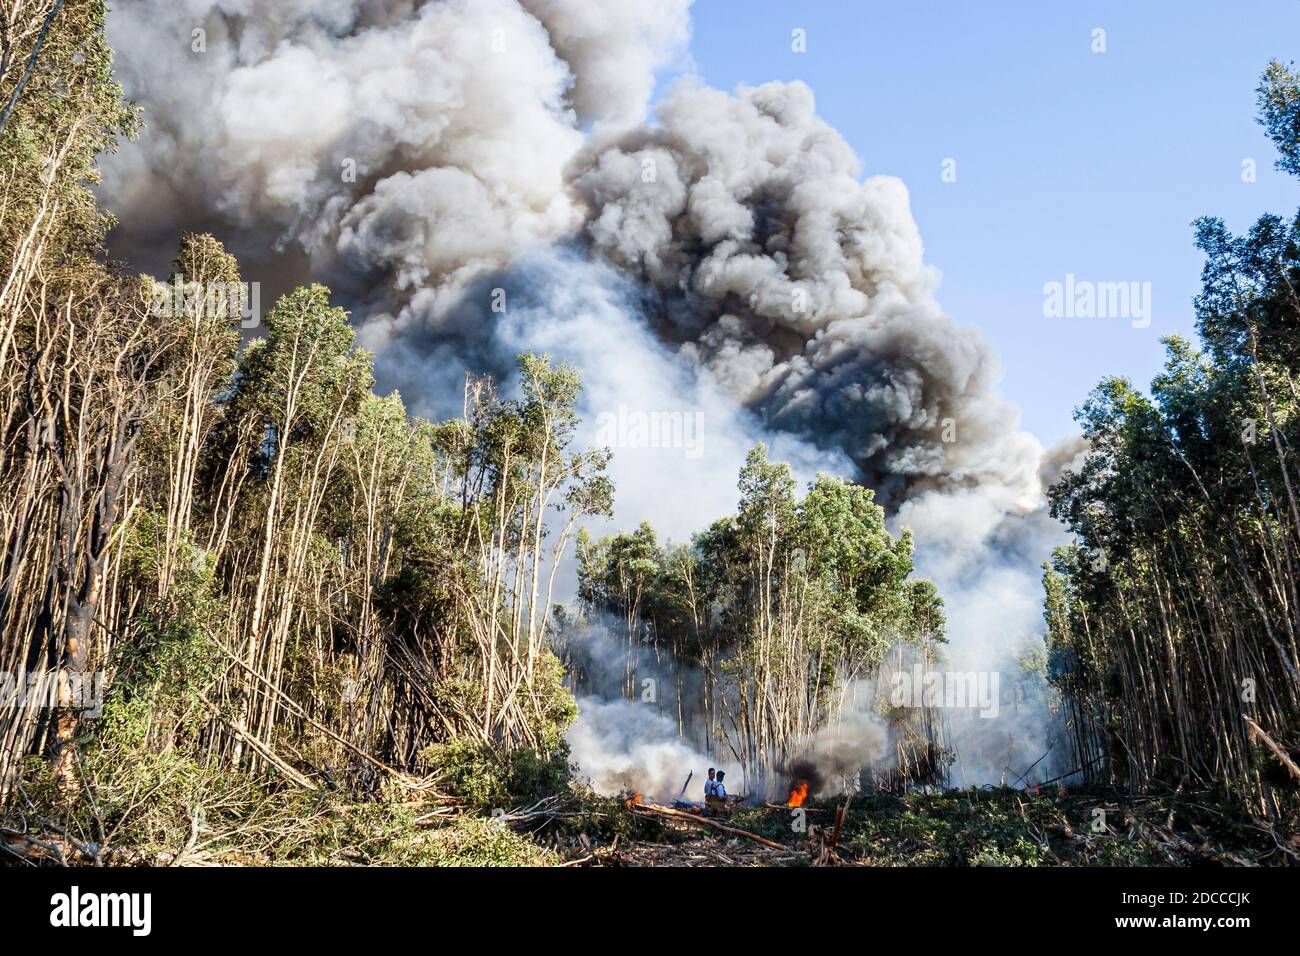 Miami Florida, Pennsuco West Okeechobee Road, arbres endommagés par un incendie combustion contrôlée par la cendre, pompiers pompiers pompiers pompiers pompiers Everglades fumée de bordure, Banque D'Images